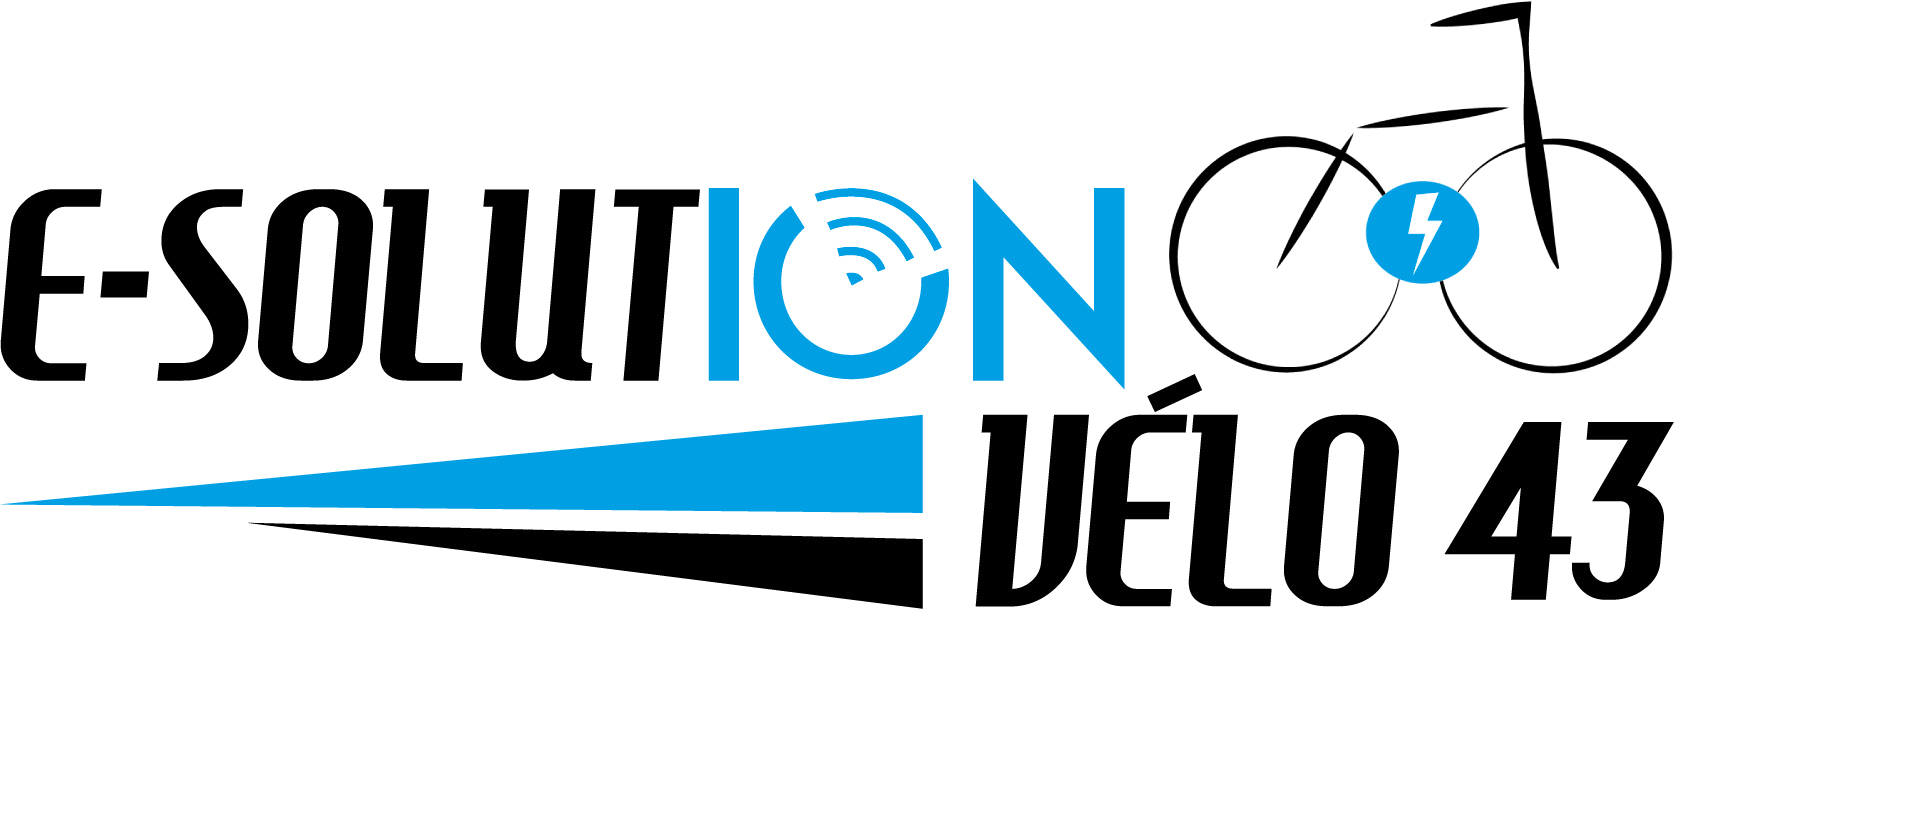 Logo ESolutionVelo43